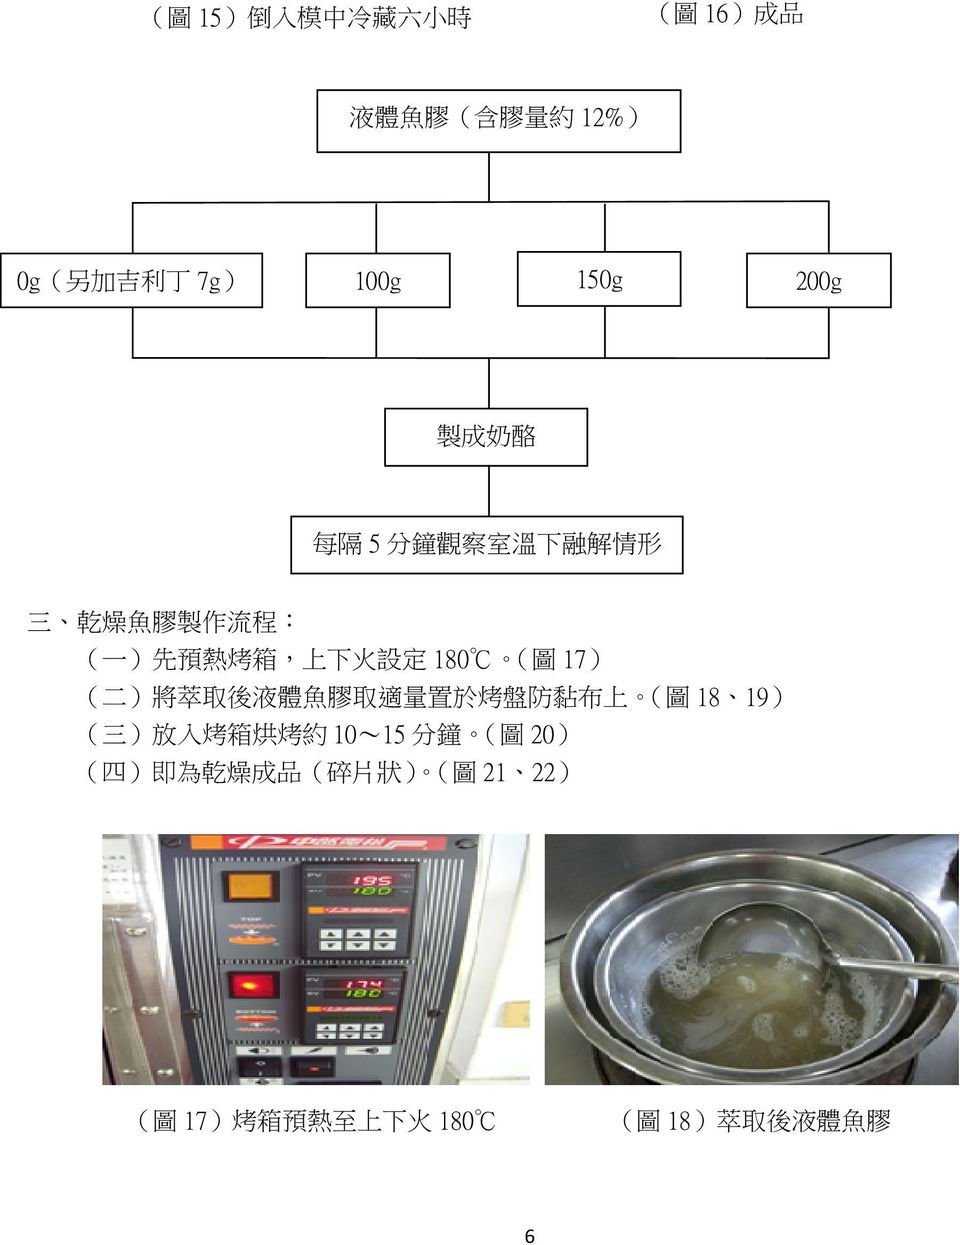 ( 圖 17) ( 二 ) 將 萃 取 後 液 體 魚 膠 取 適 量 置 於 烤 盤 防 黏 布 上 ( 圖 18 19) ( 三 ) 放 入 烤 箱 烘 烤 約 10~15 分 鐘